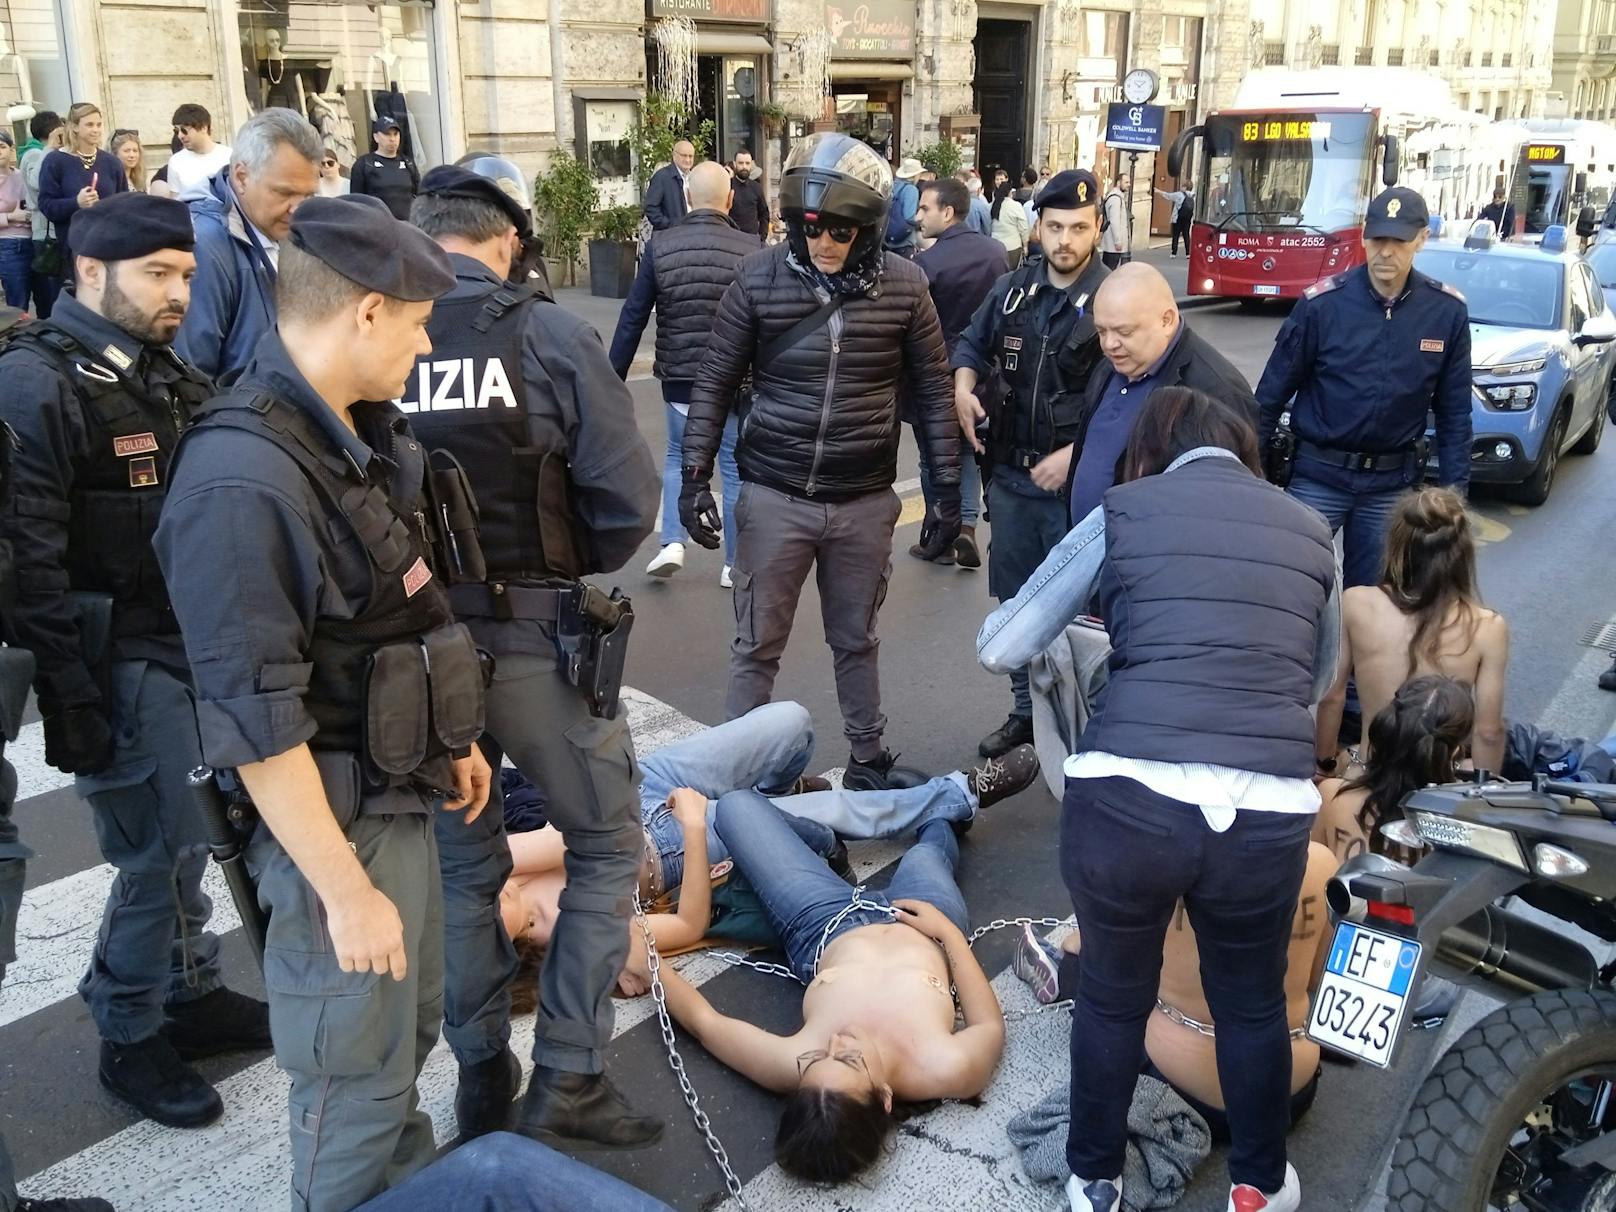 Bilder, die verstören: Aktivisten der "Letzten Generation" (''Ultima Generazione'') umringt von Polizisten, während einer Demonstration in Rom.